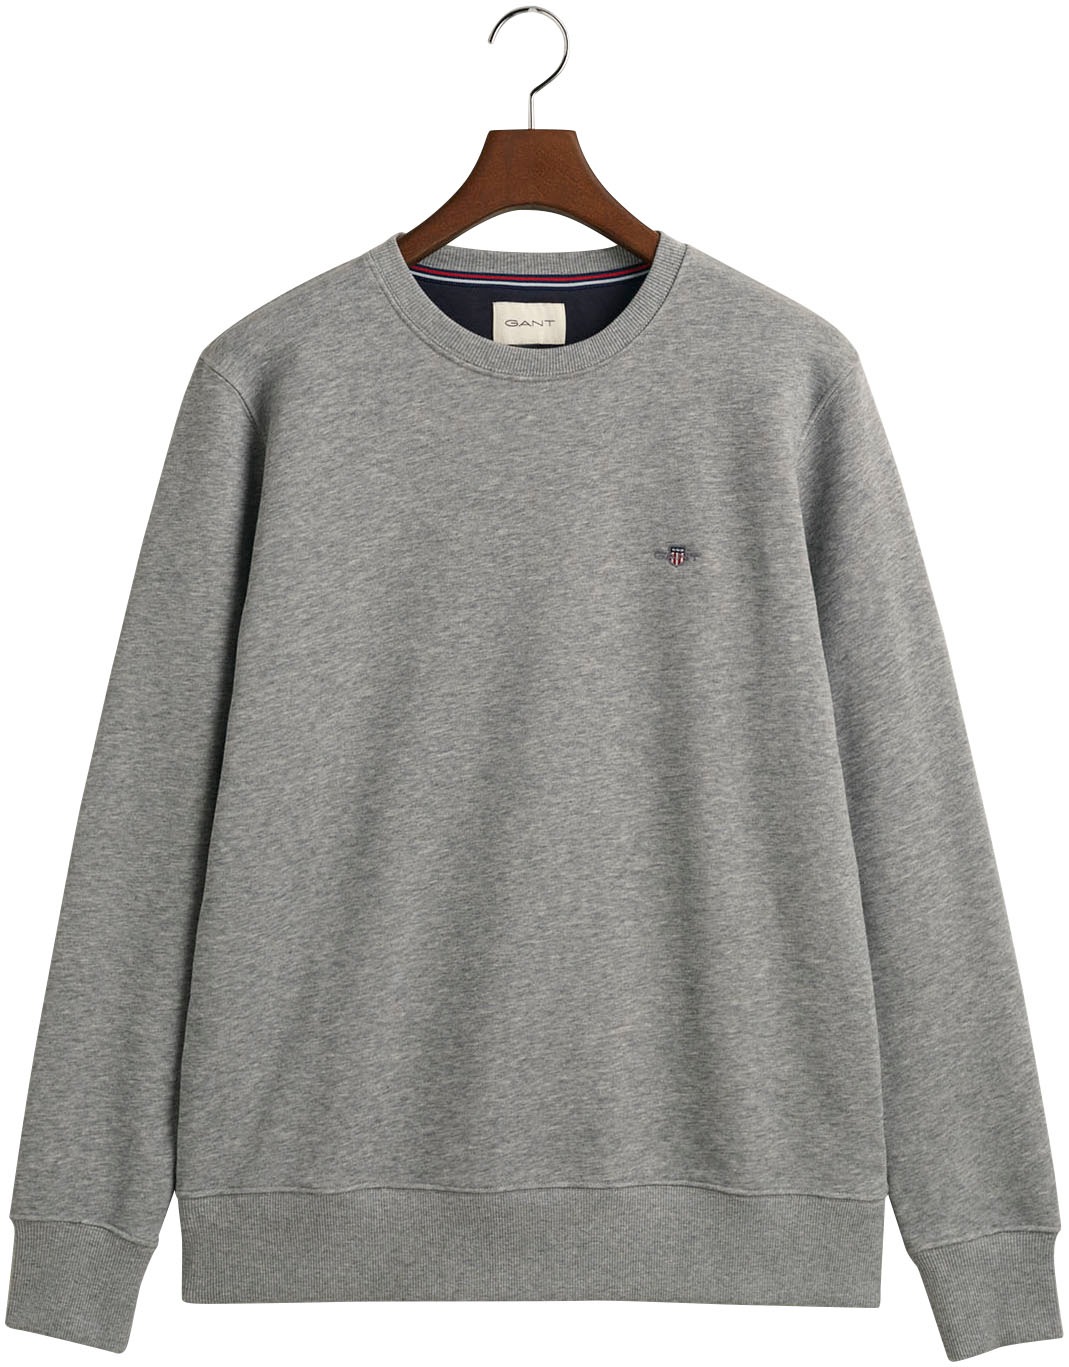 »REG OTTO Gant Logostickerei auf mit bei SHIELD der C-NECK online Brust Sweatshirt kaufen SWEAT«,